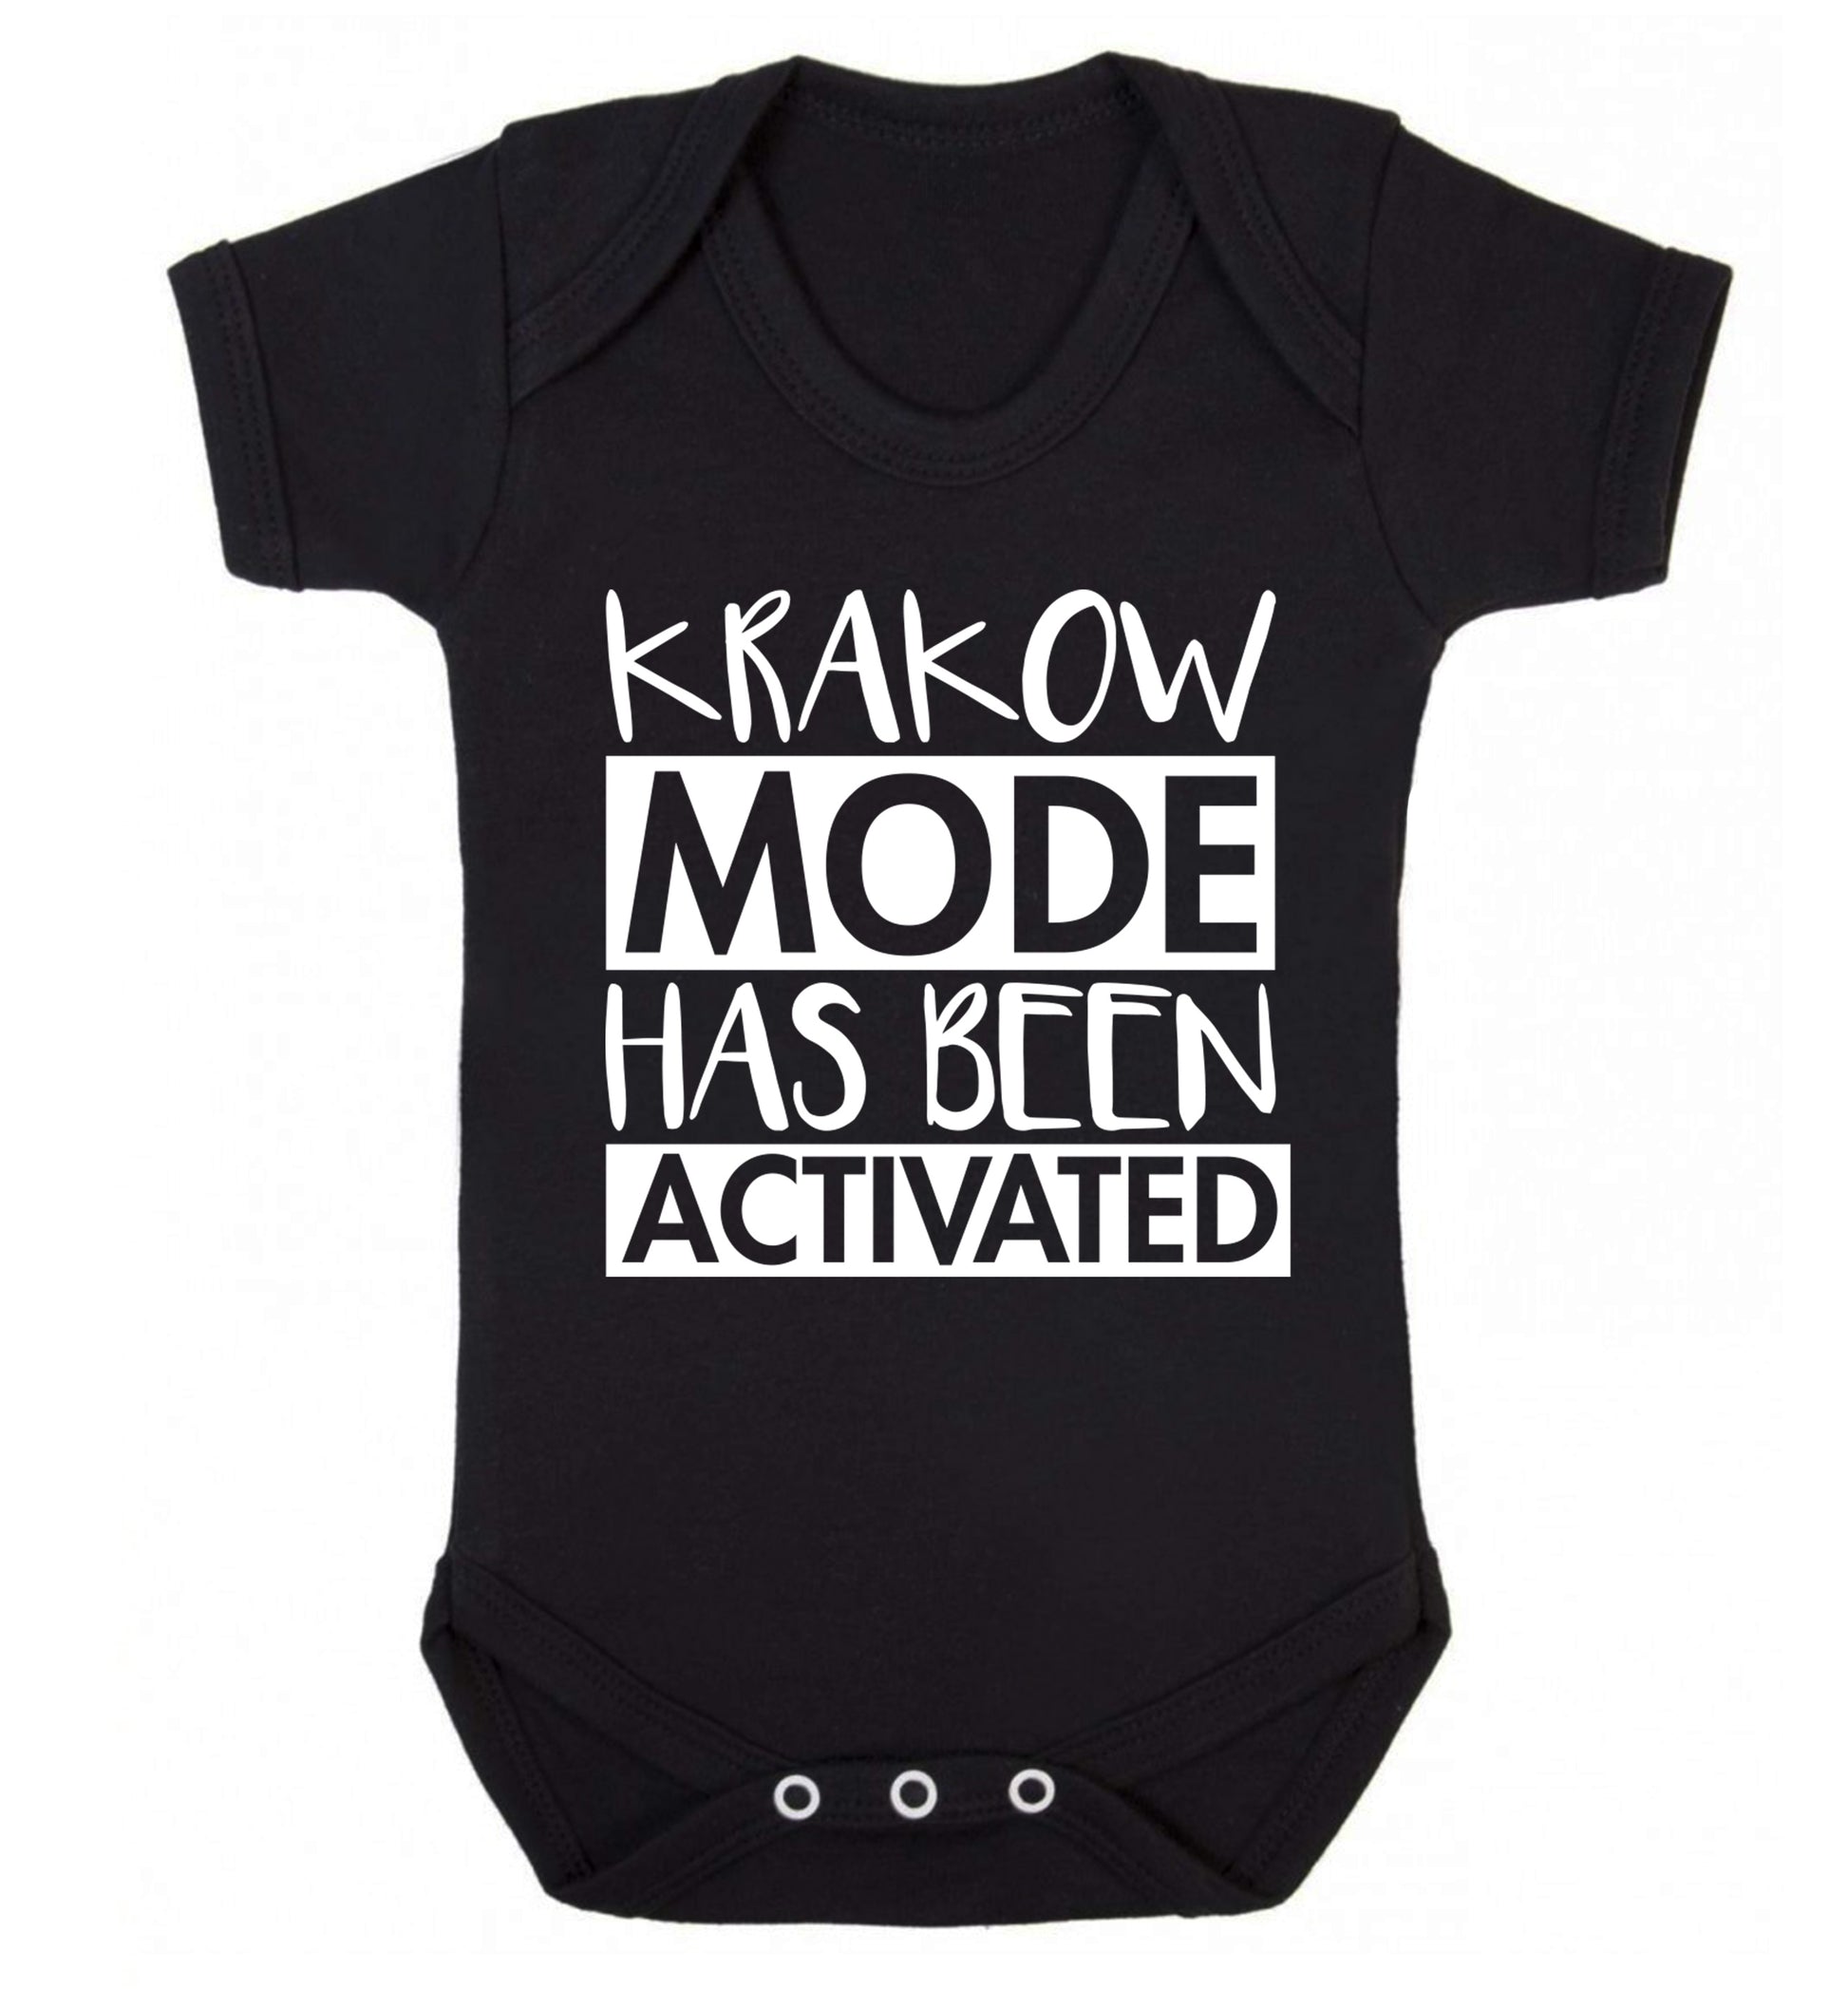 Krakow mode has been activated Baby Vest black 18-24 months